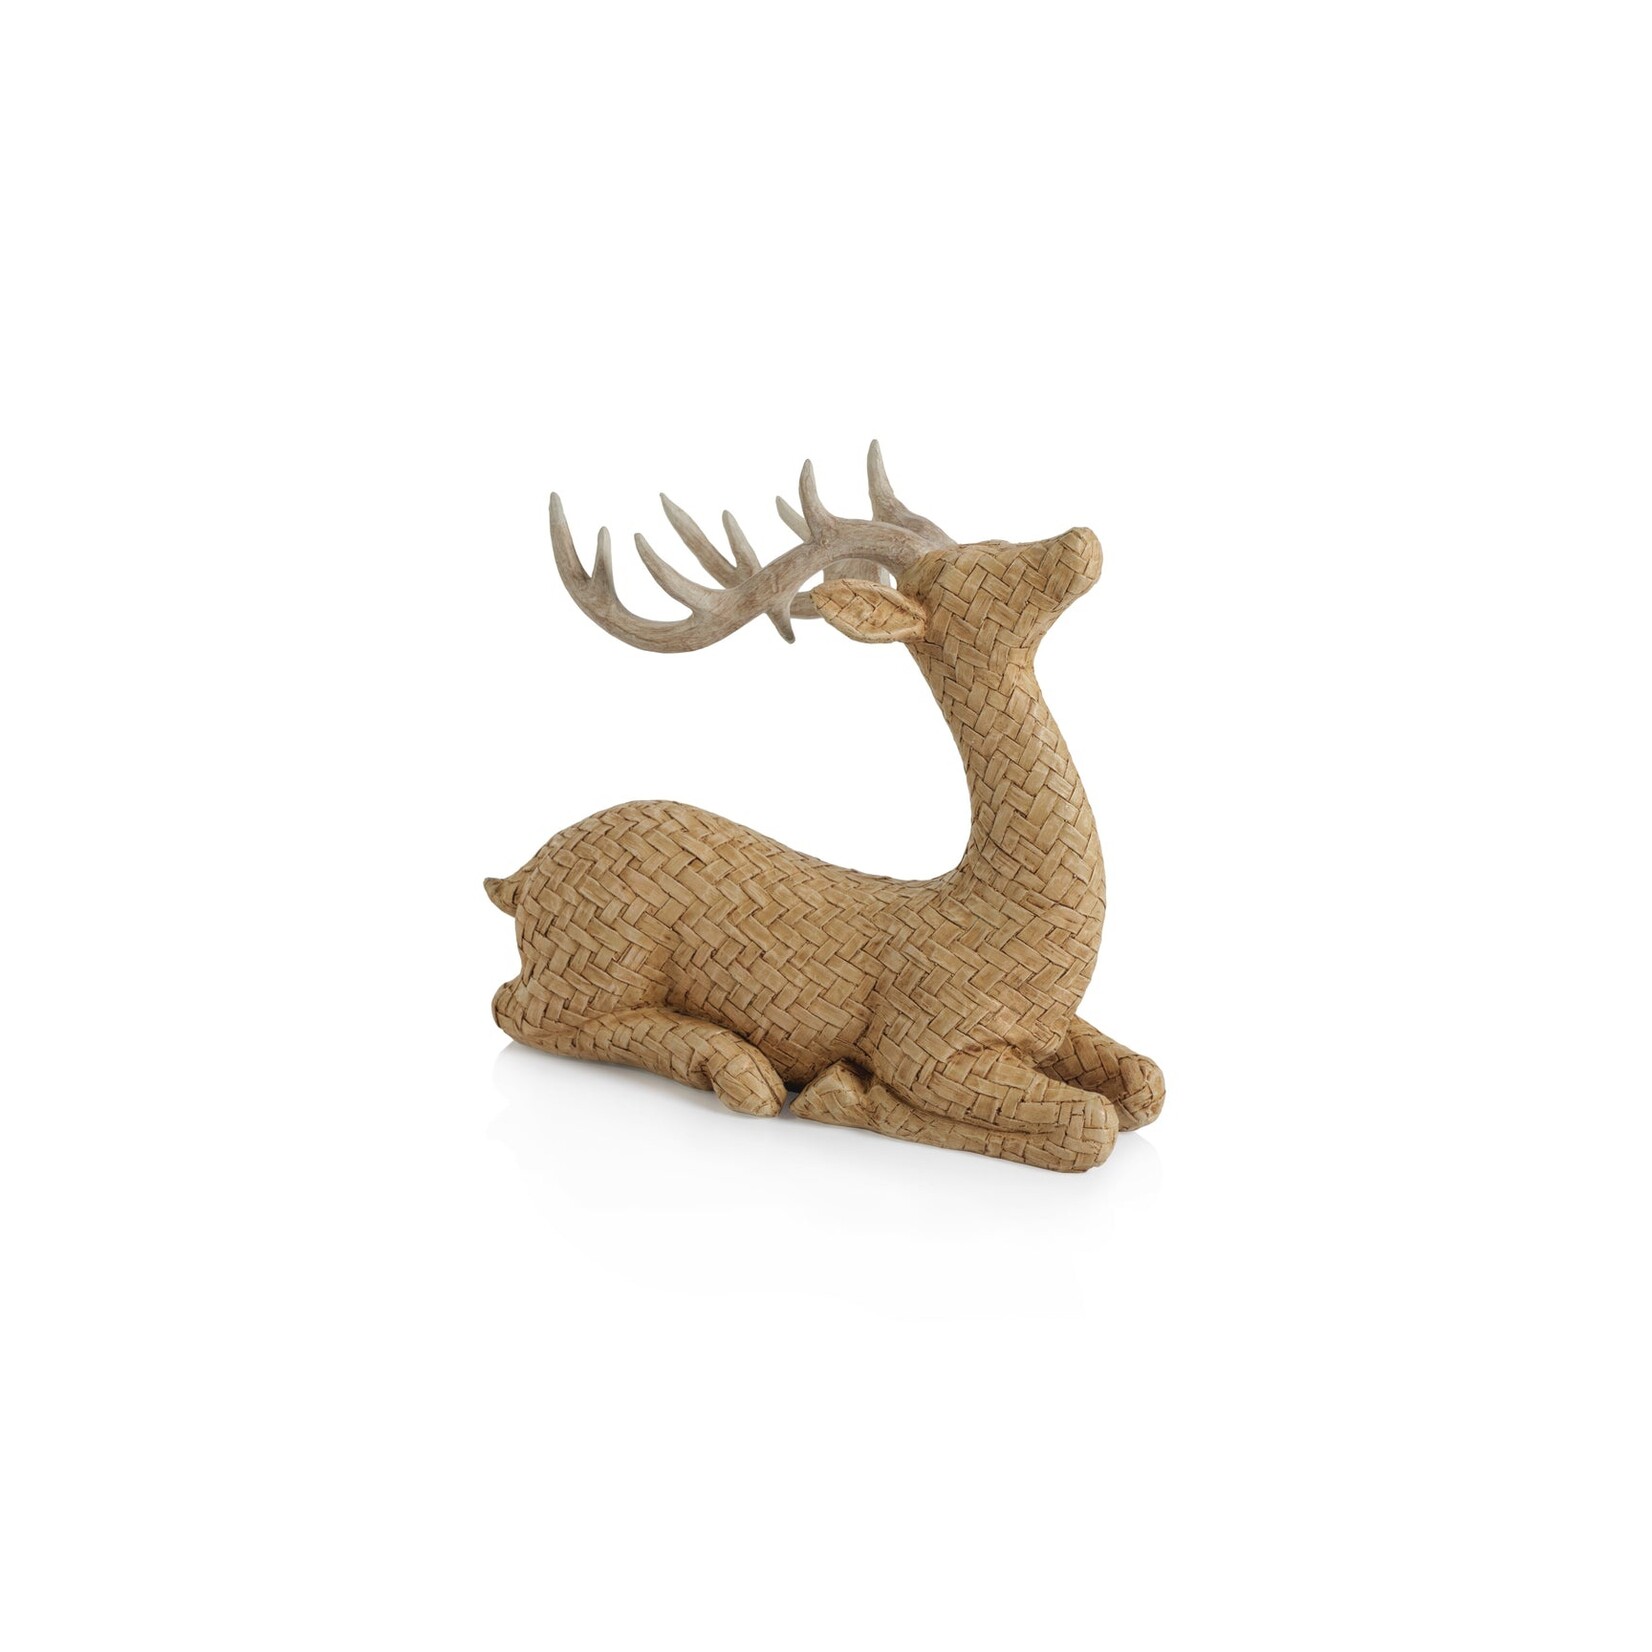 Zodax Decorative Deer